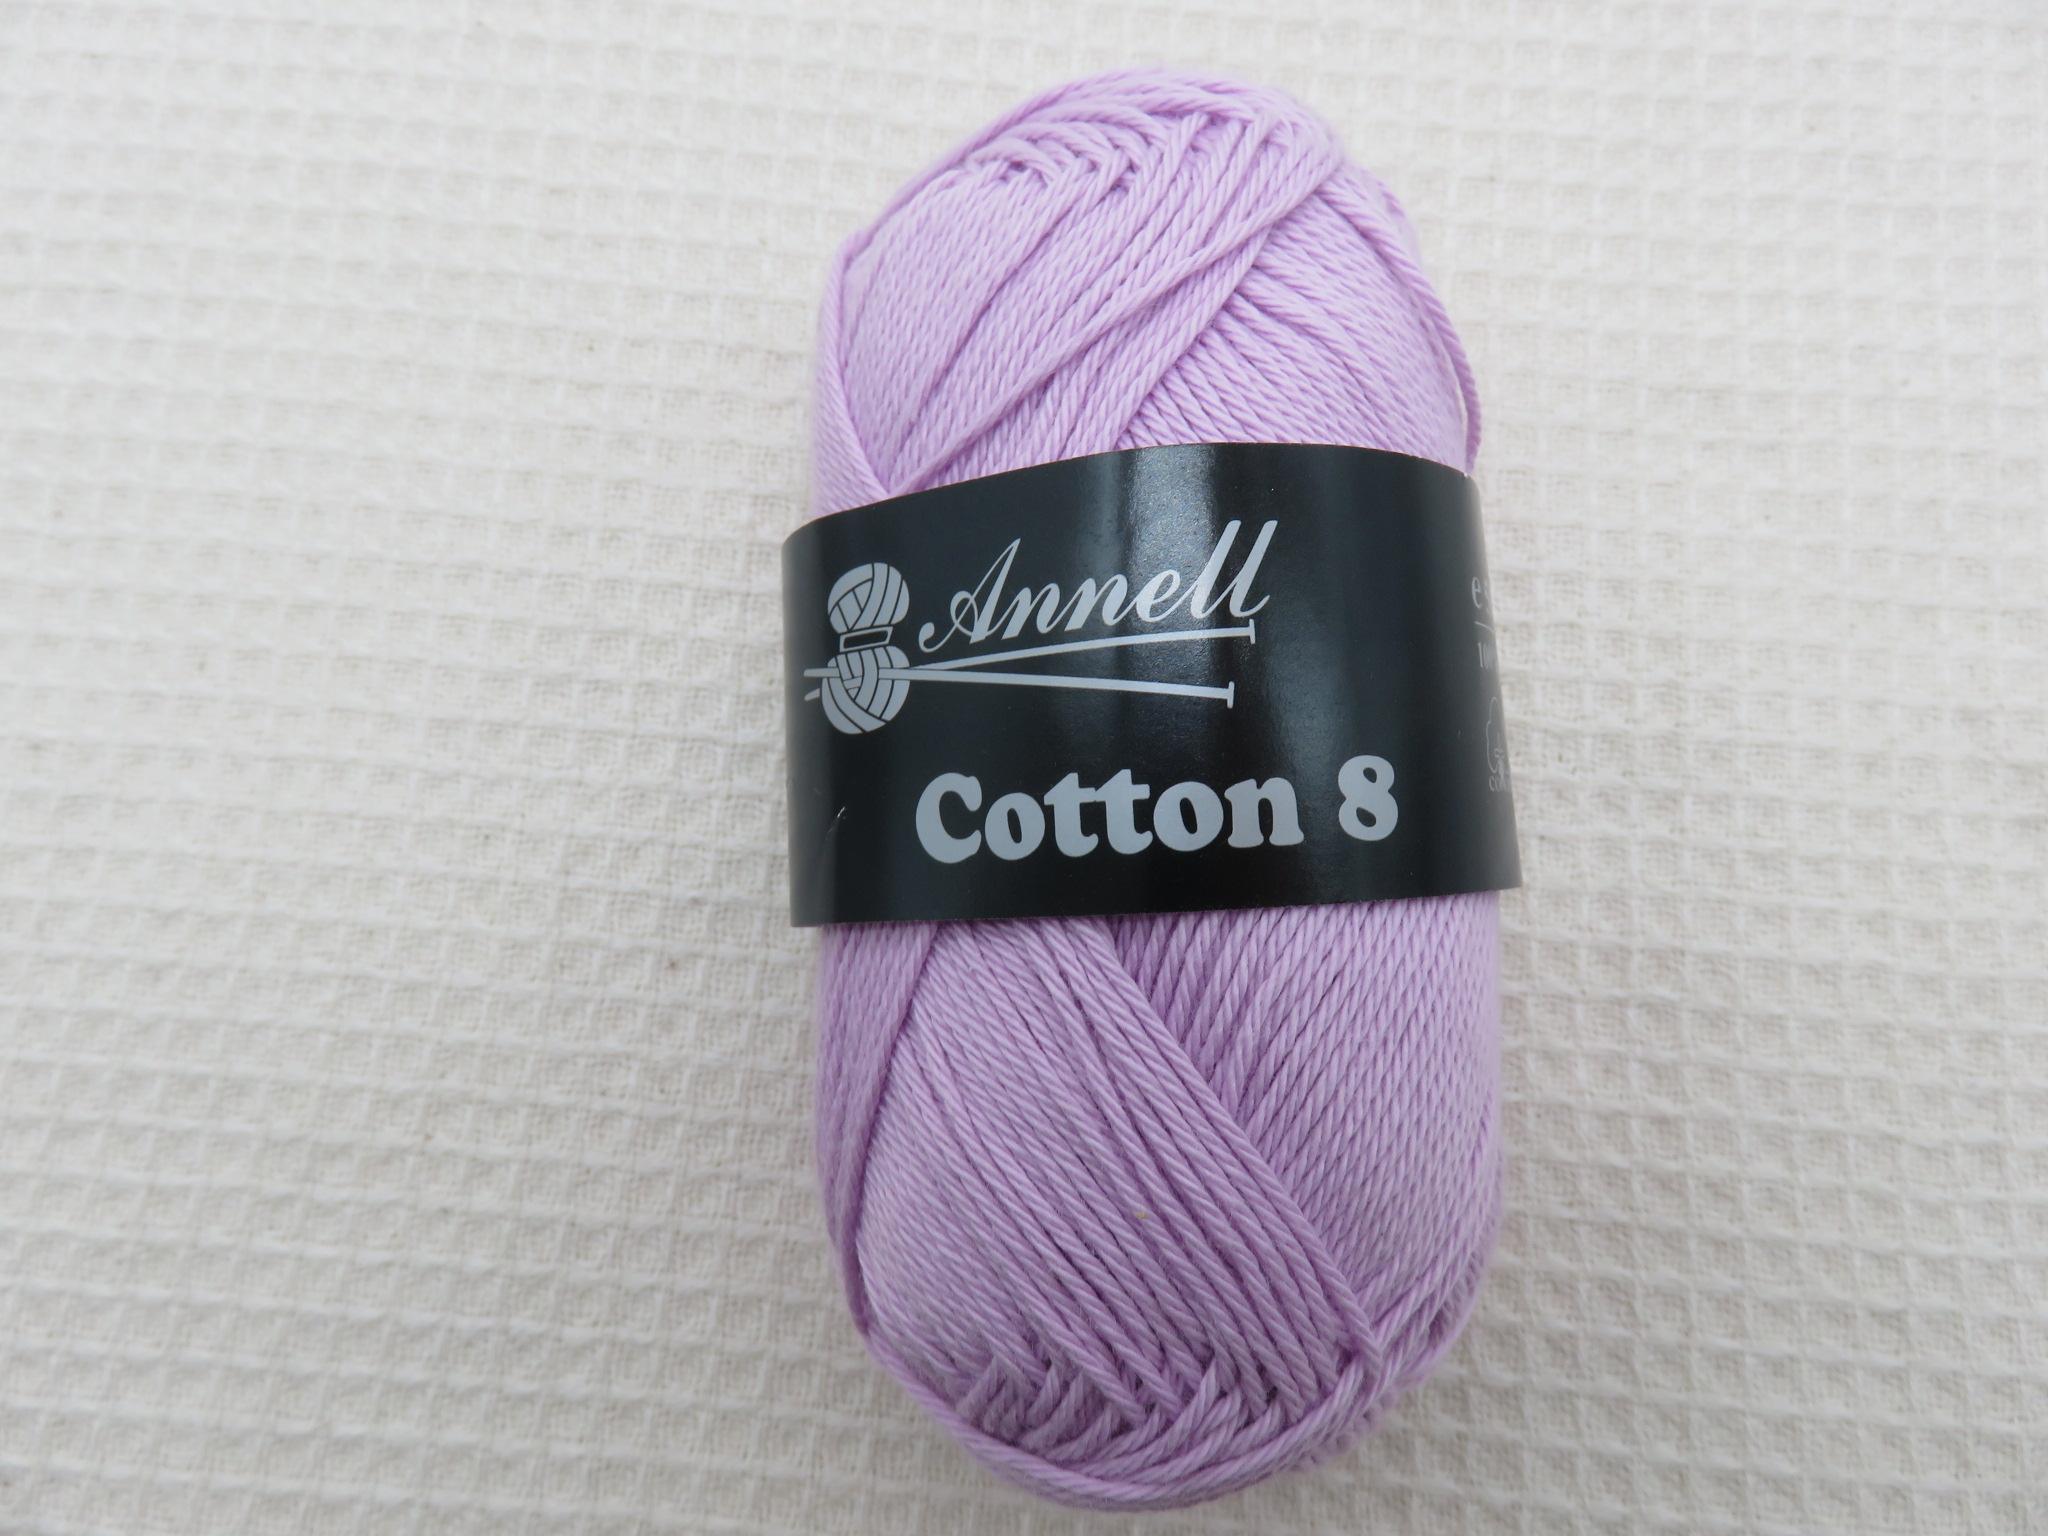 Coton Annell cotton 8 parme pelote Fil 100% coton